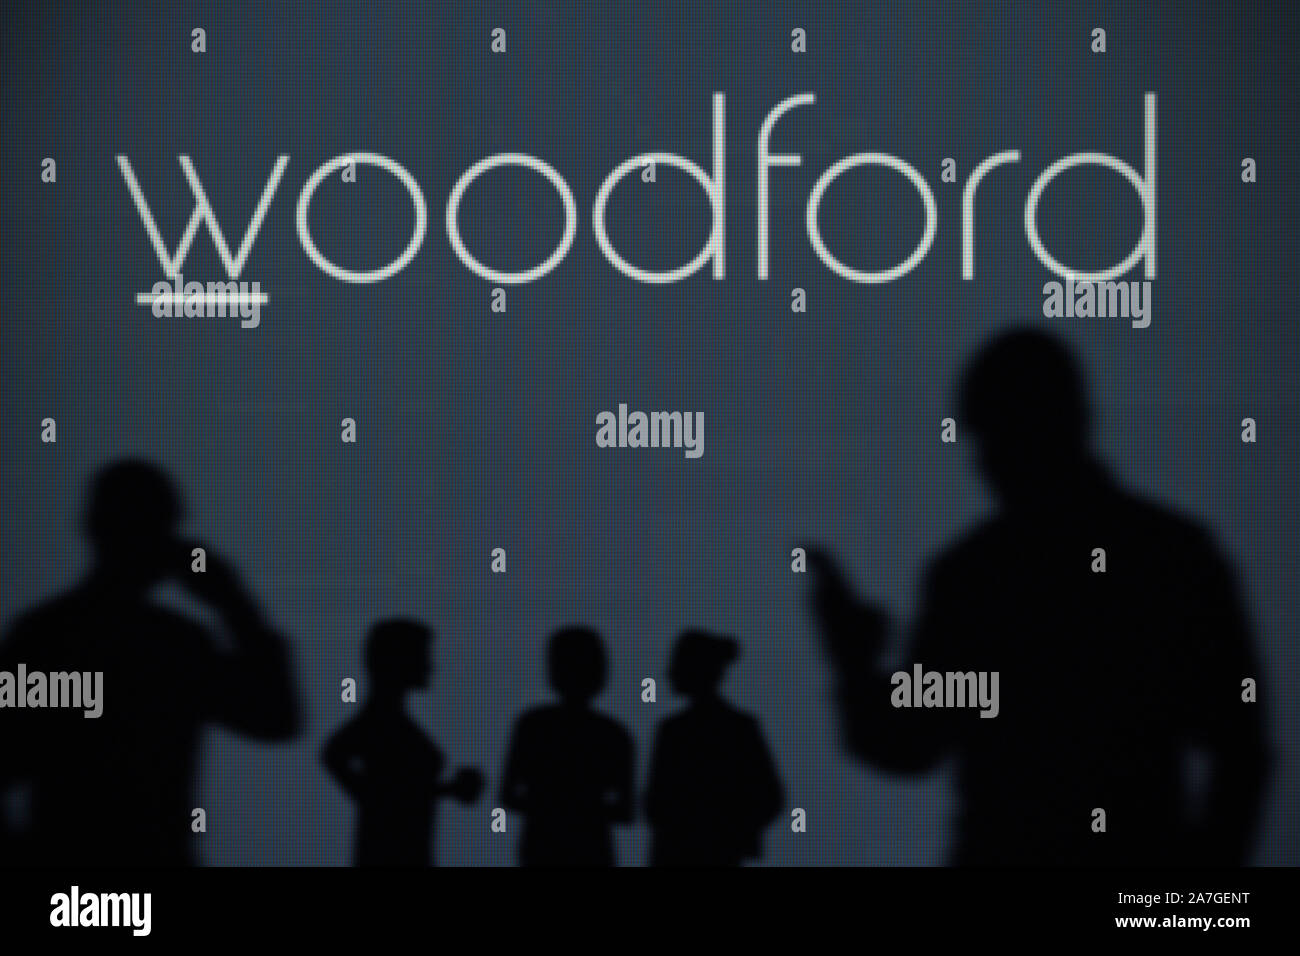 El Woodford paciente Capital Trust logo es visto en una pantalla LED en el fondo mientras una silueta persona utiliza un smartphone (uso Editorial solamente) Foto de stock